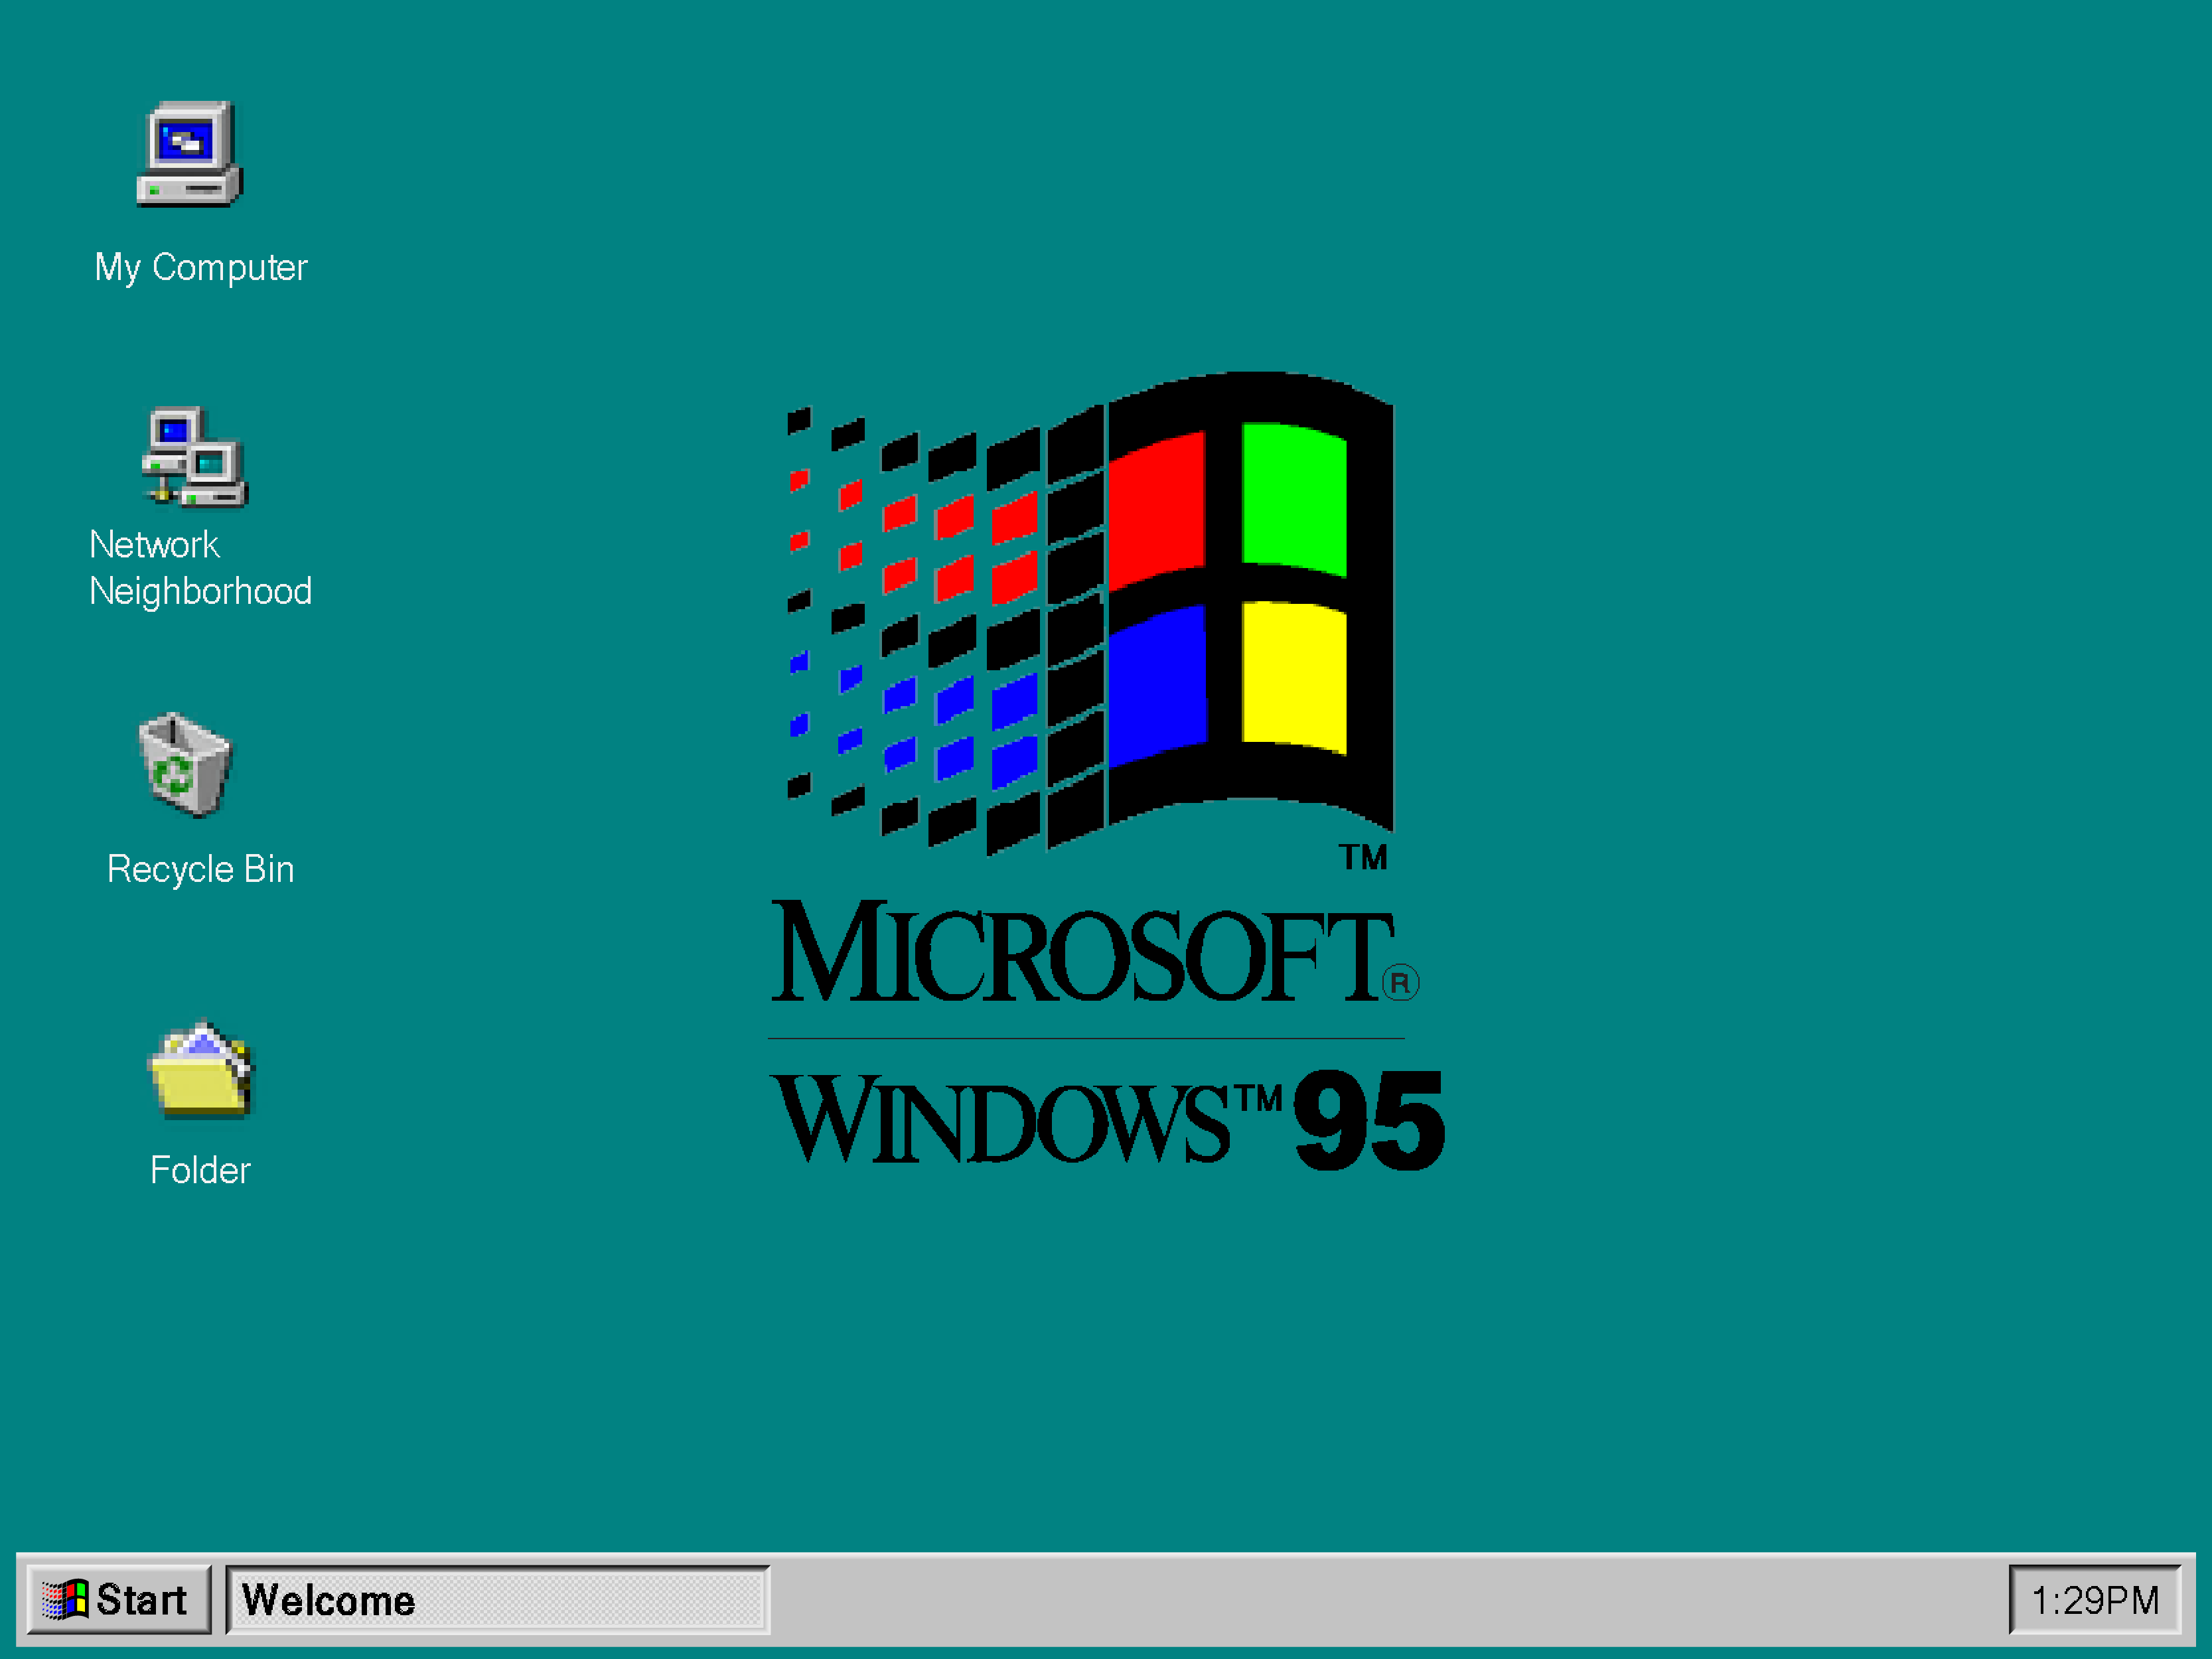 Windows английская версия. Операционная система Windows 95. Windows 95 операционные системы Microsoft. Экран Windows 95. Графический Интерфейс Windows 95.